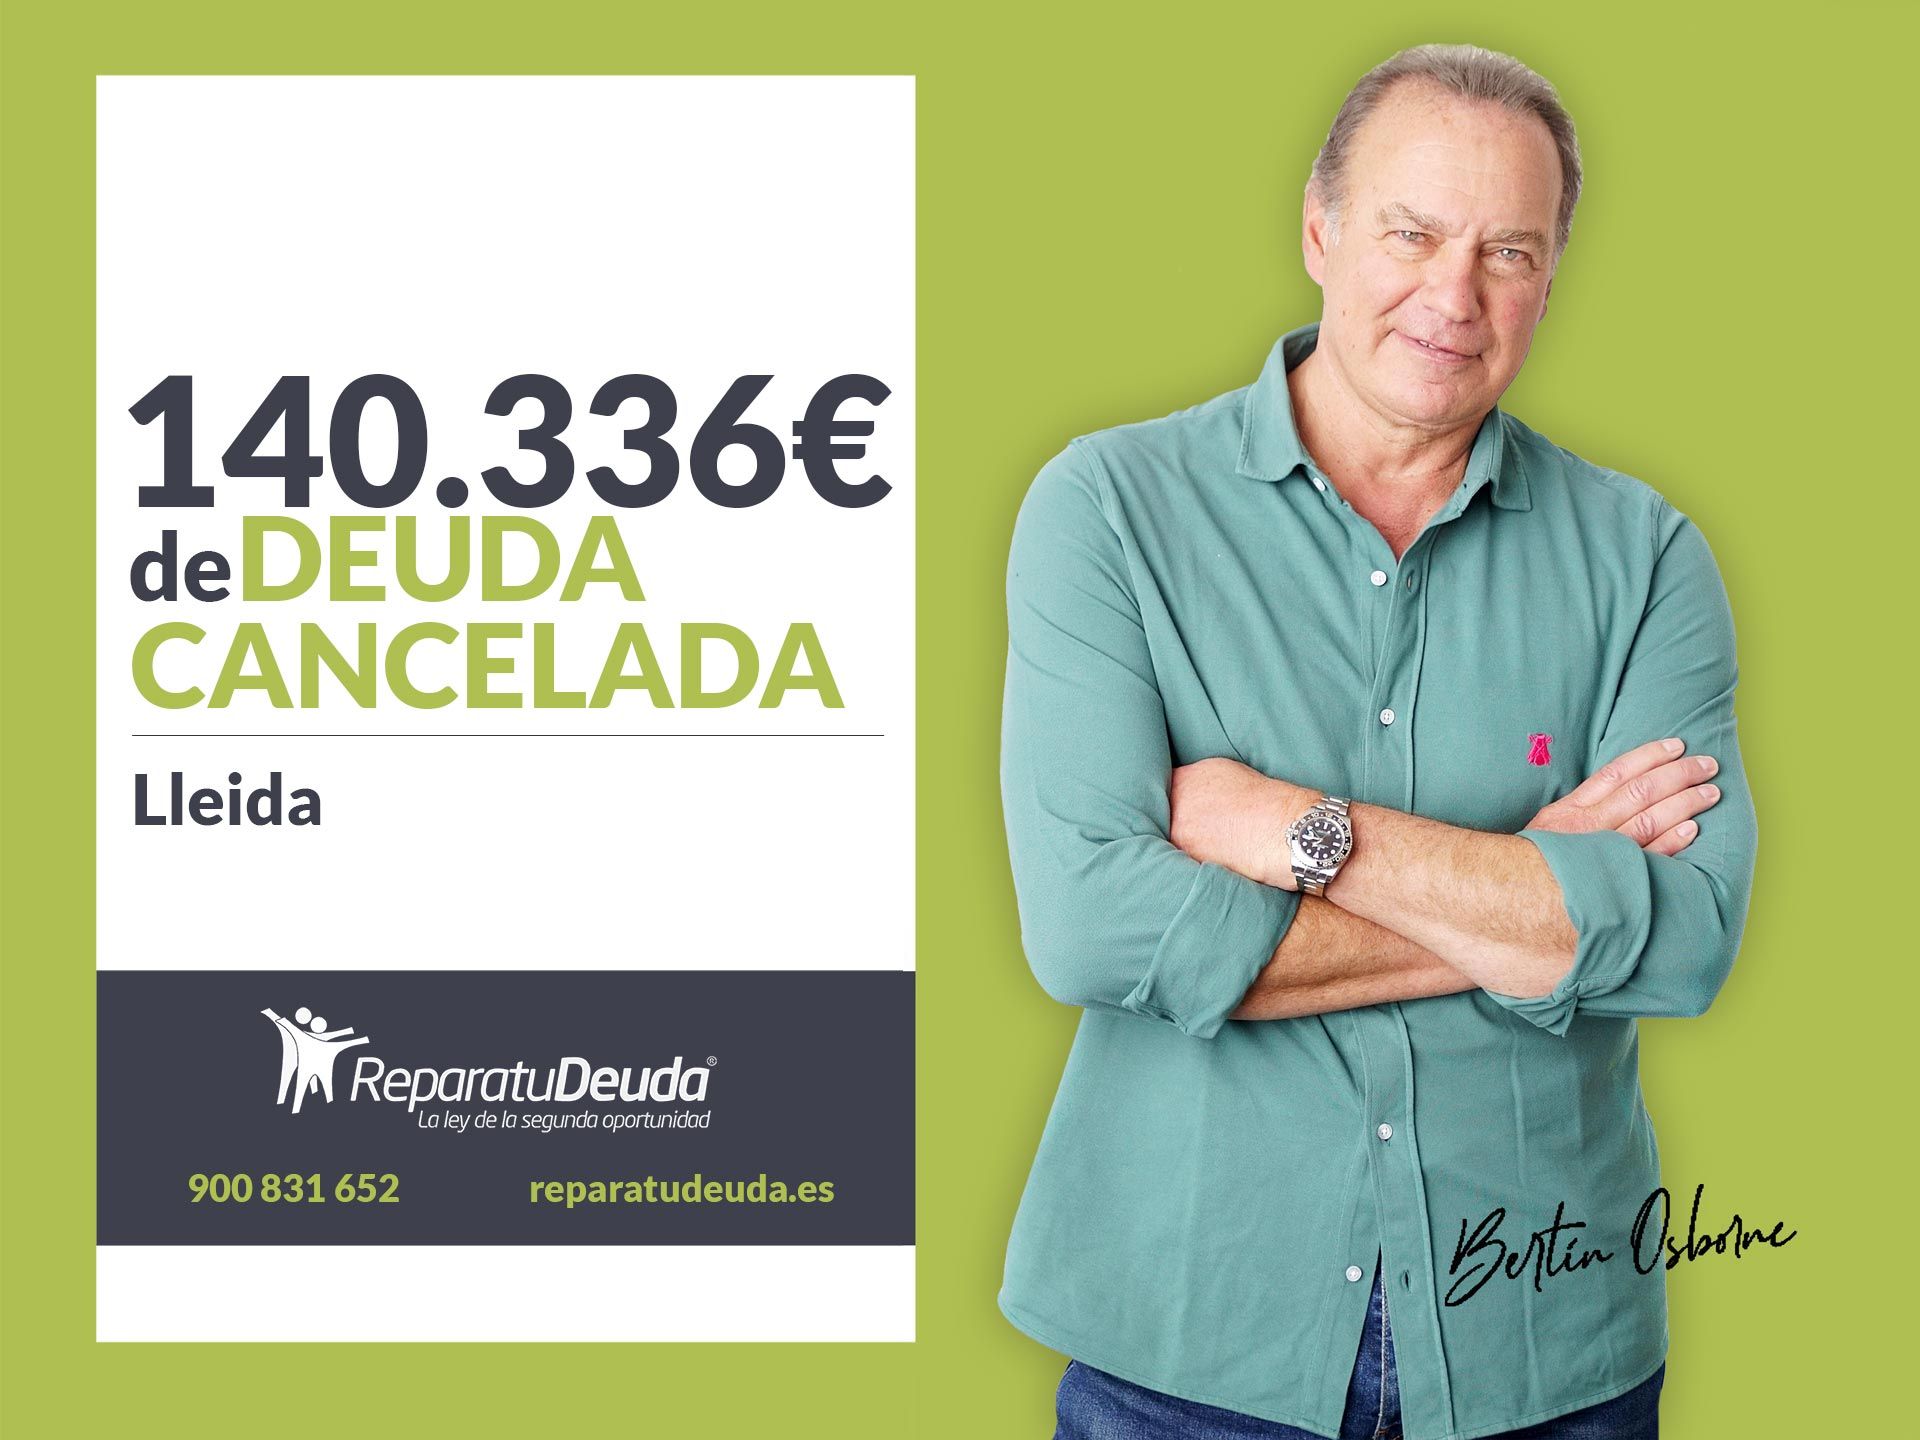 Repara tu Deuda Abogados cancela 140.336? en Lleida (Catalunya) con la Ley de Segunda Oportunidad